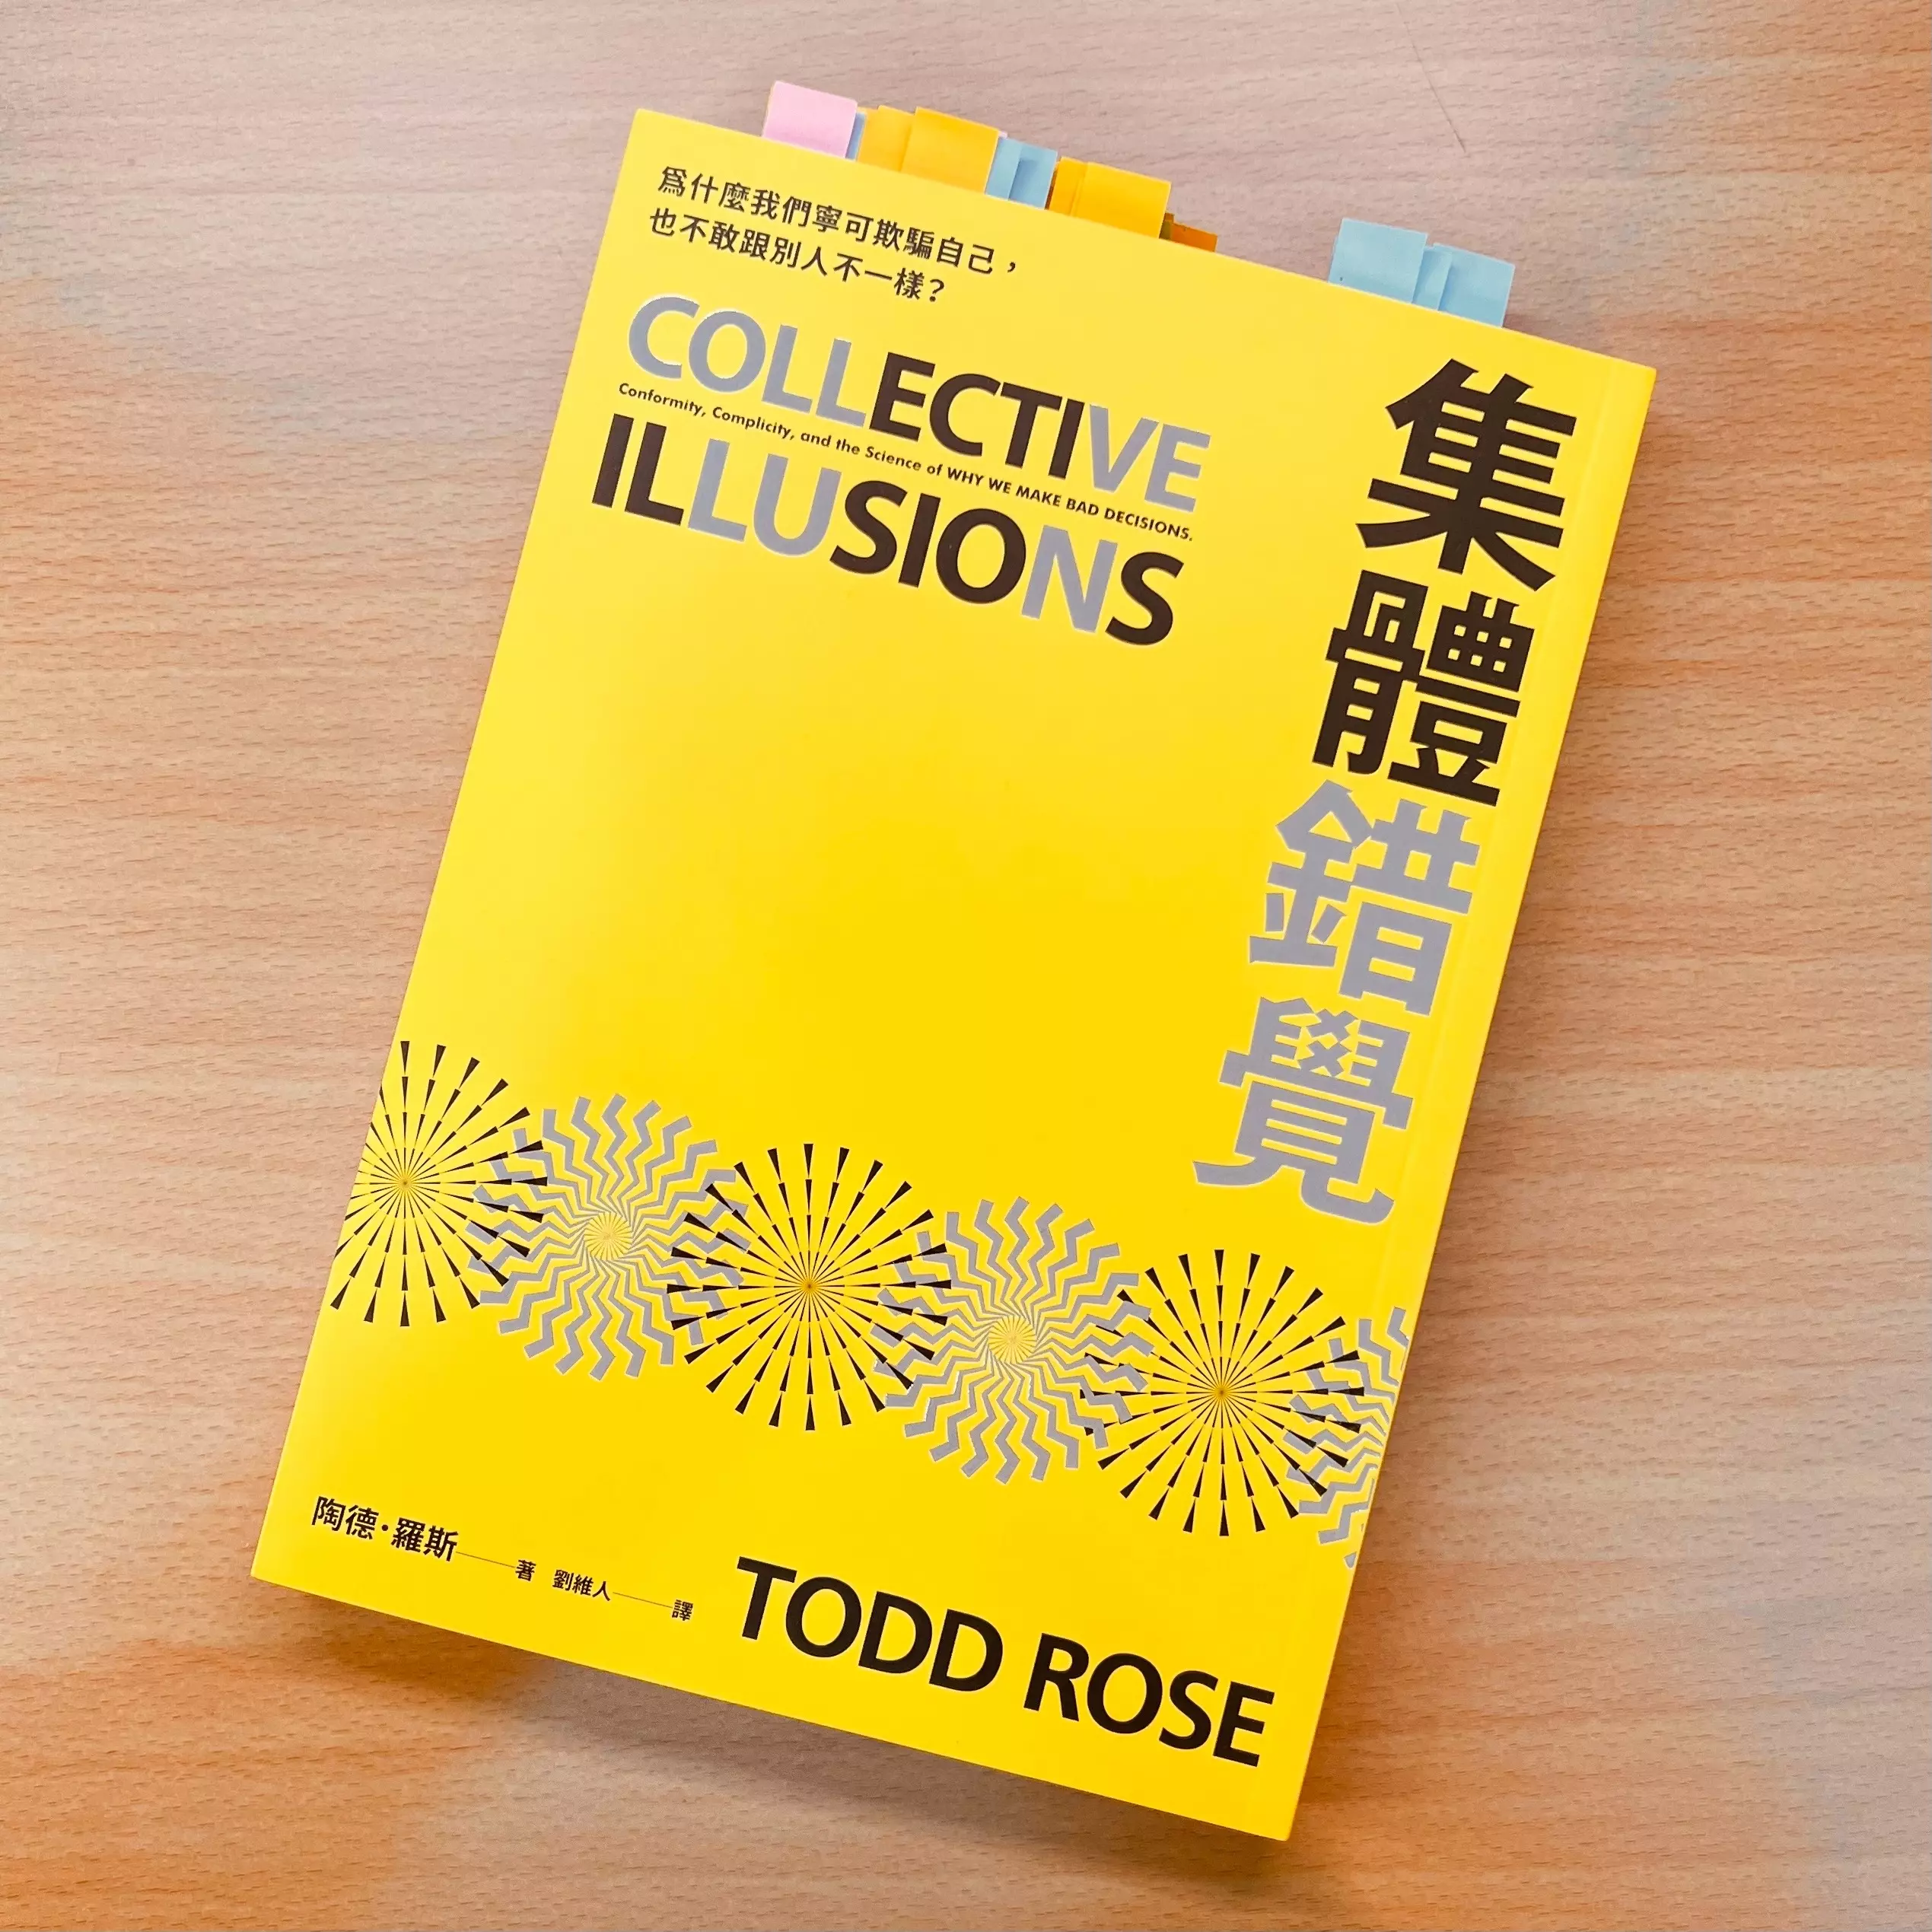 集體錯覺 書 Todd Rose 平安文化 施定男 村長 進化村 閱讀 村長的閱讀基地 持續有料電子報